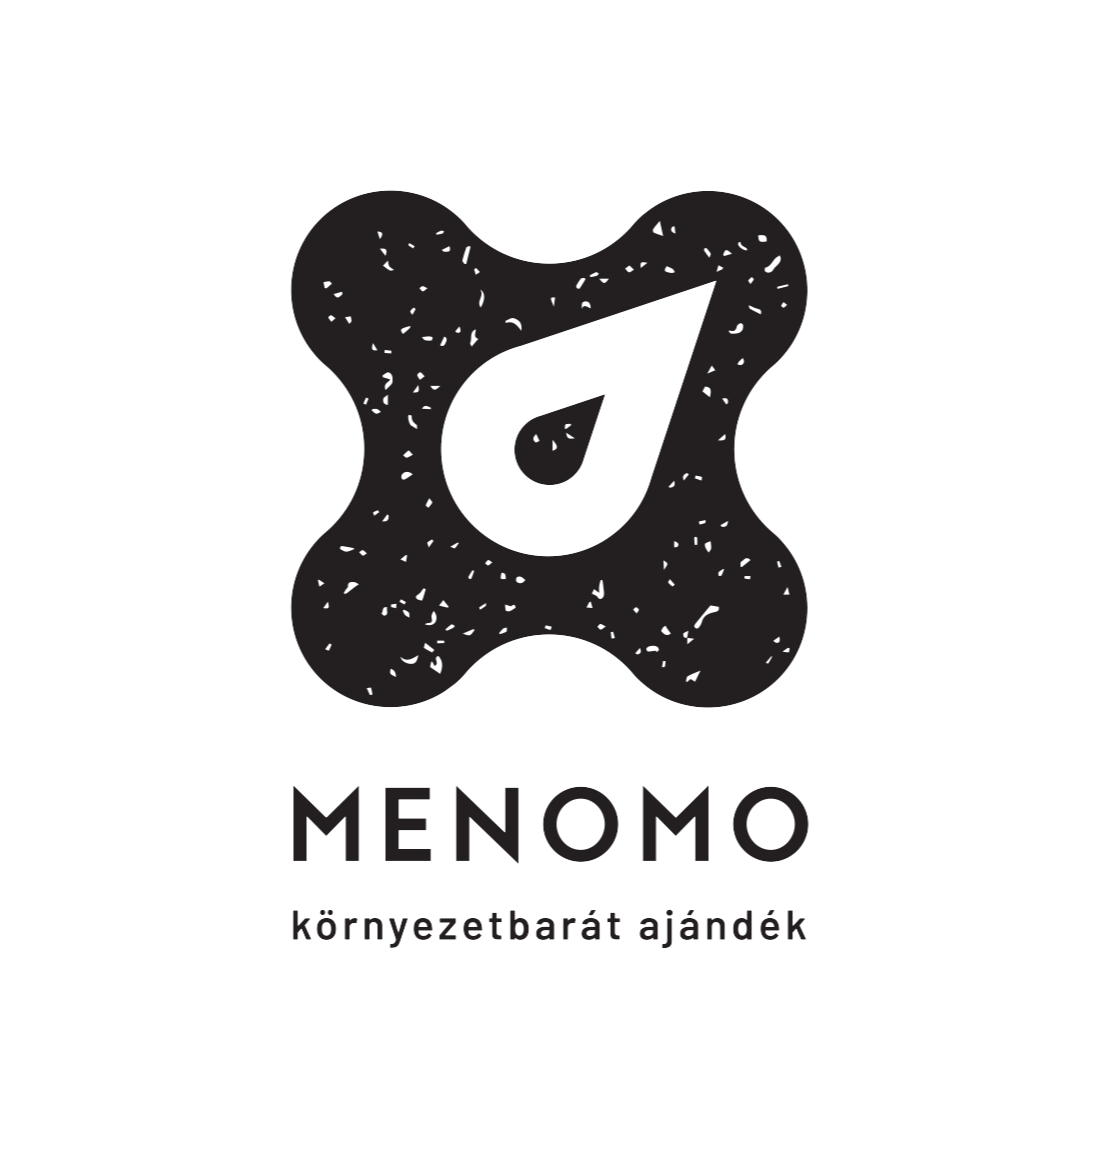 menomo logo környezetbarát ajándék felirattal